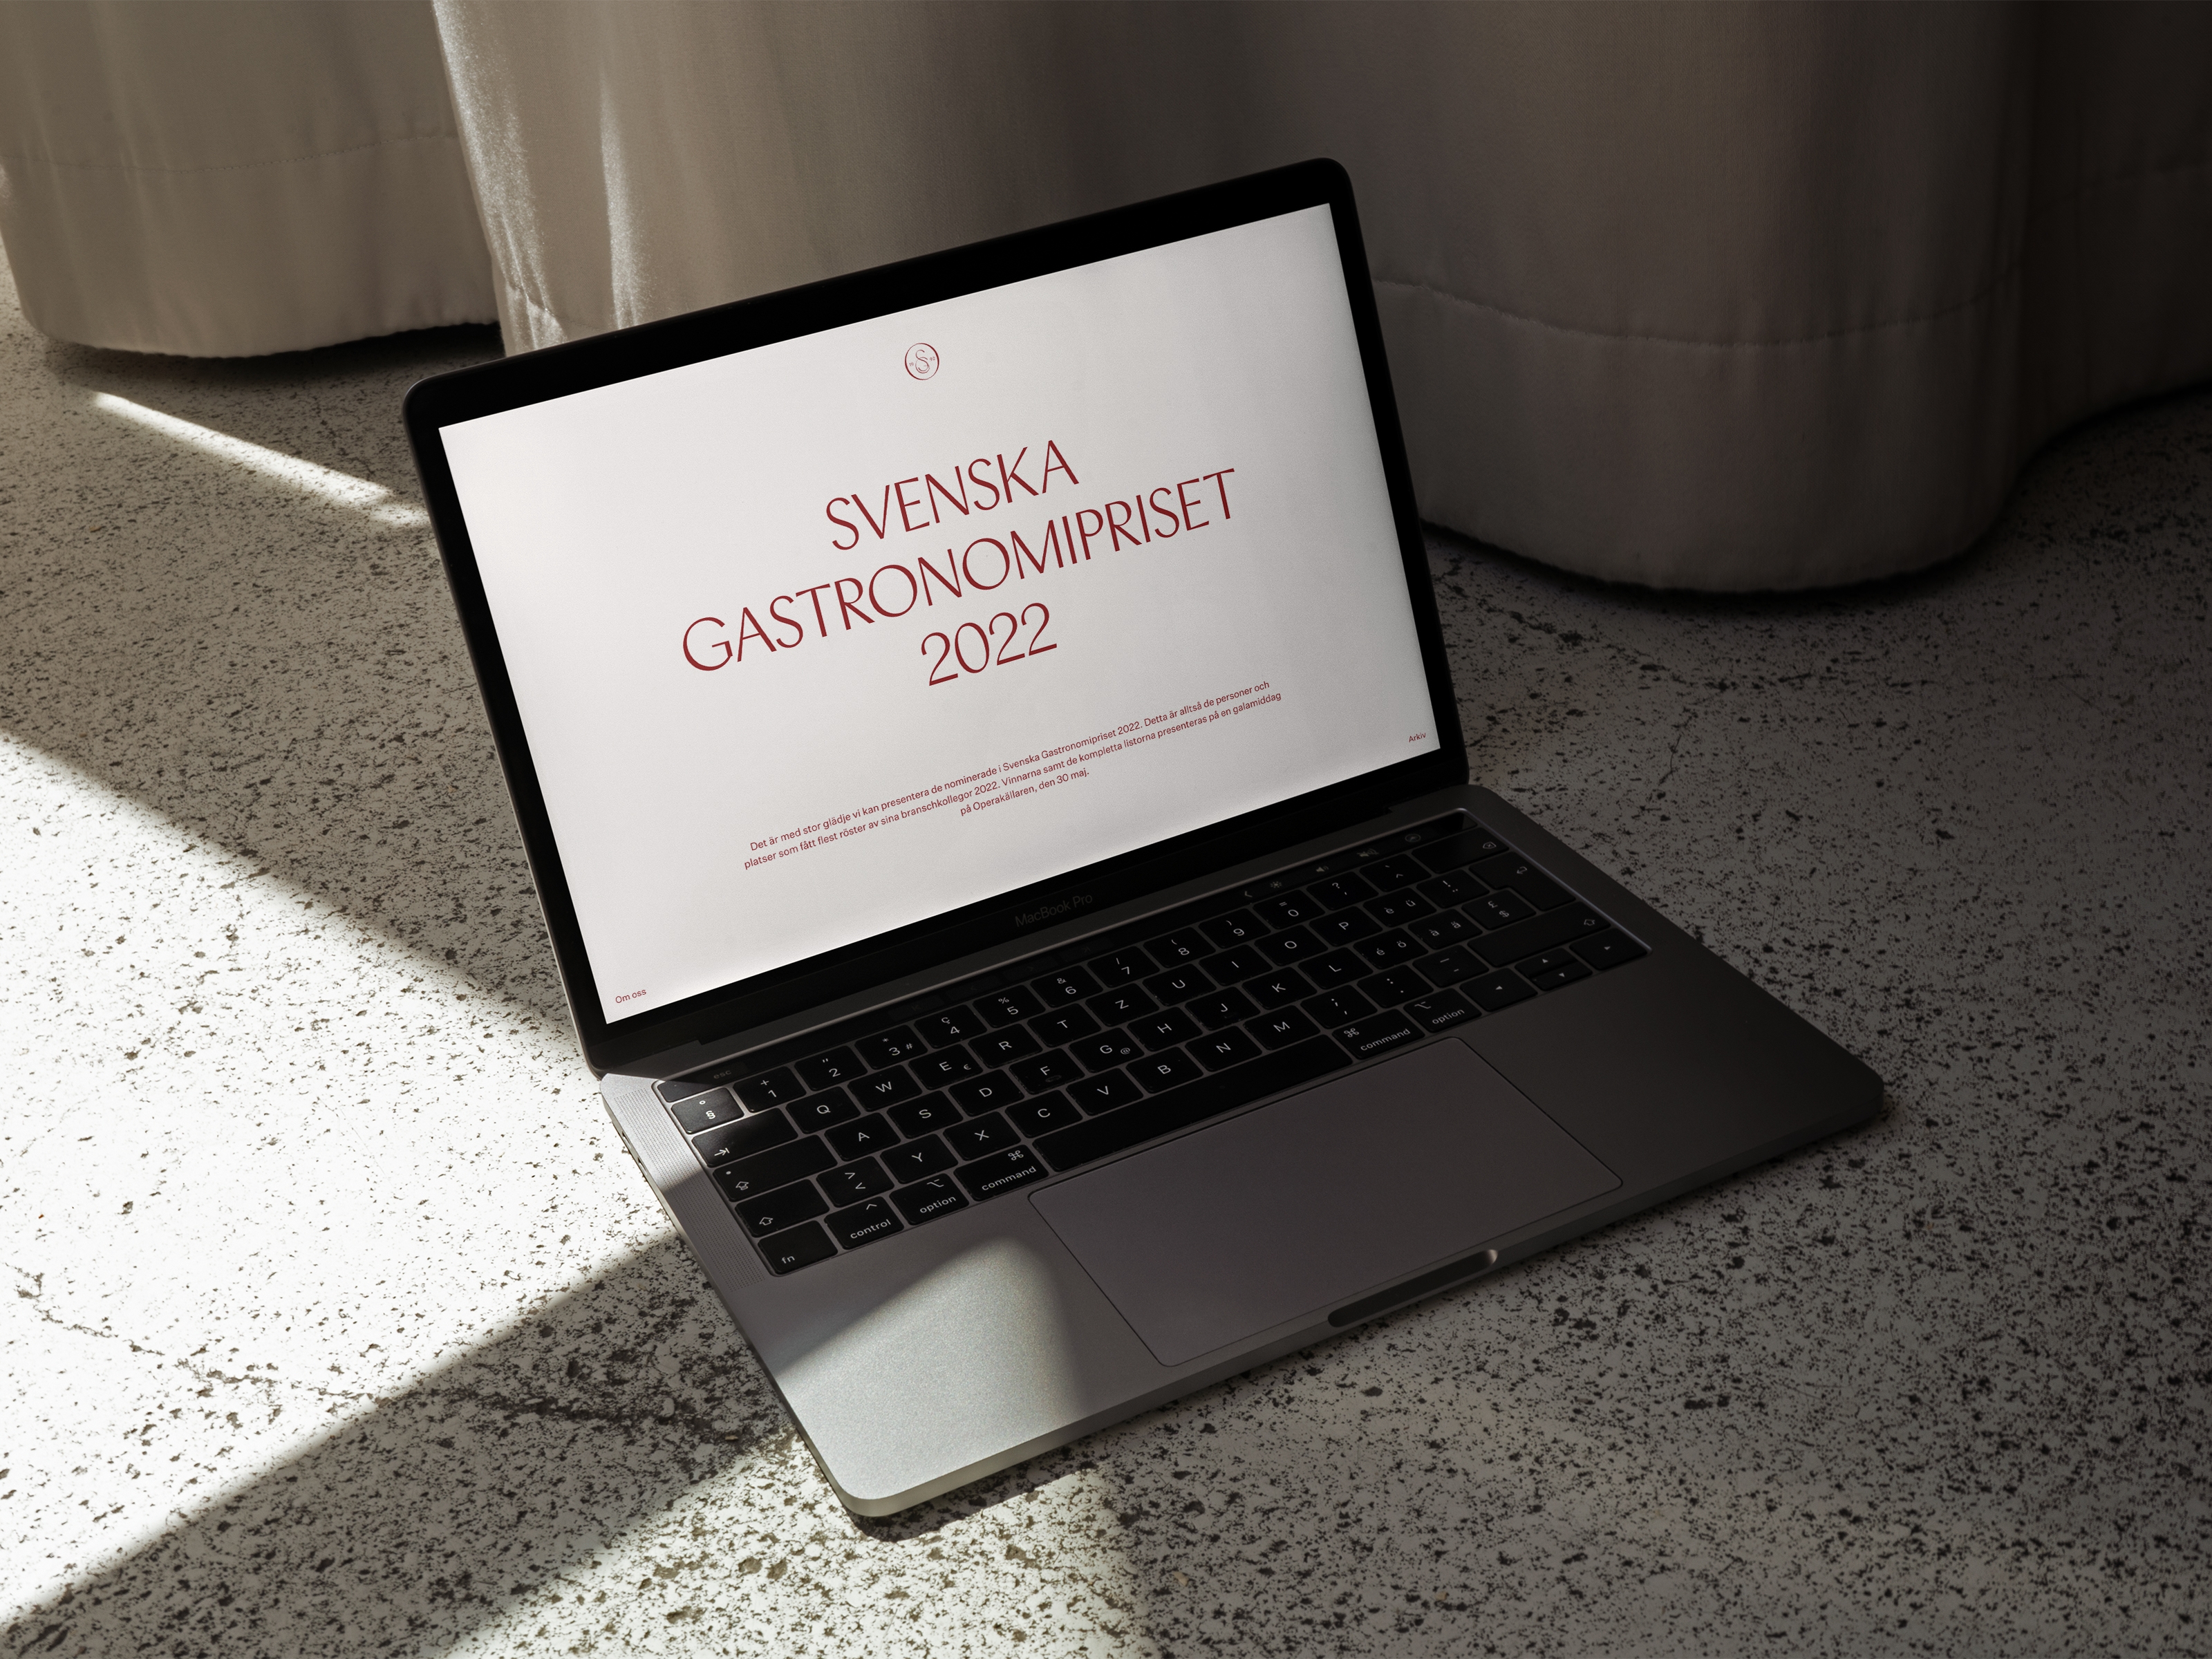 Screen from the new website for Svenska Gastronomipriset.